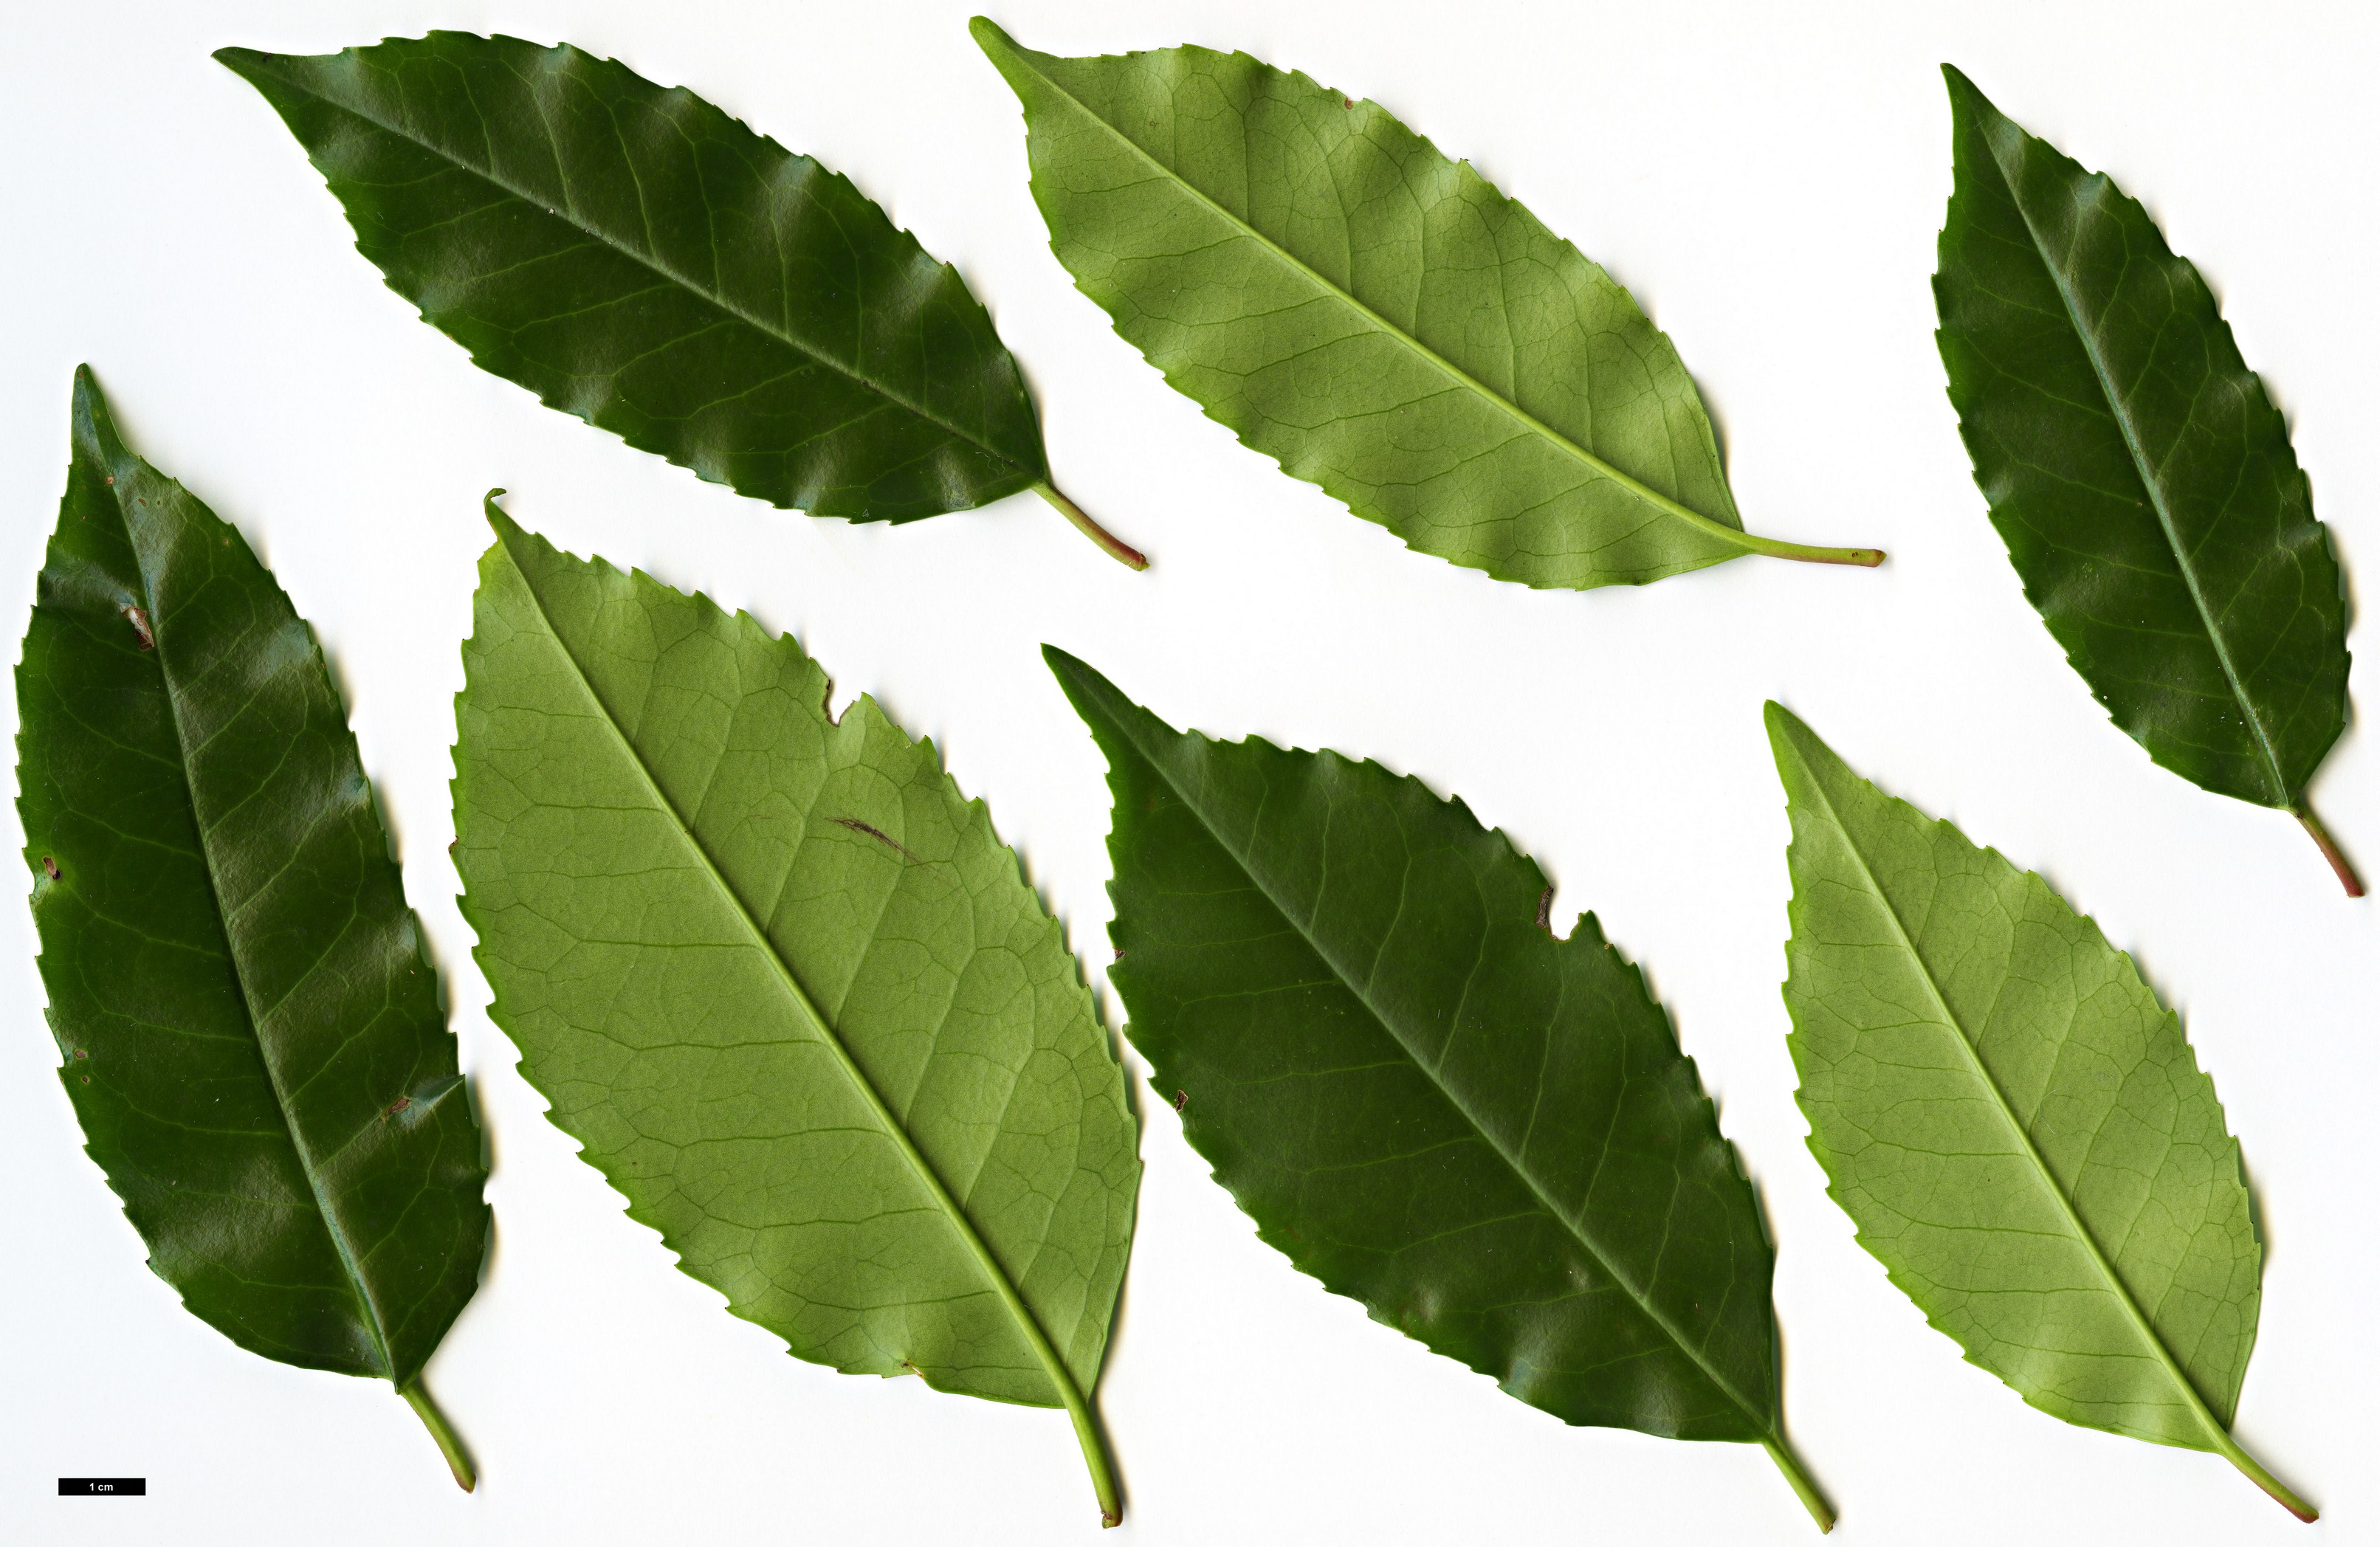 High resolution image: Family: Rosaceae - Genus: Prunus - Taxon: lusitanica - SpeciesSub: subsp. hixa